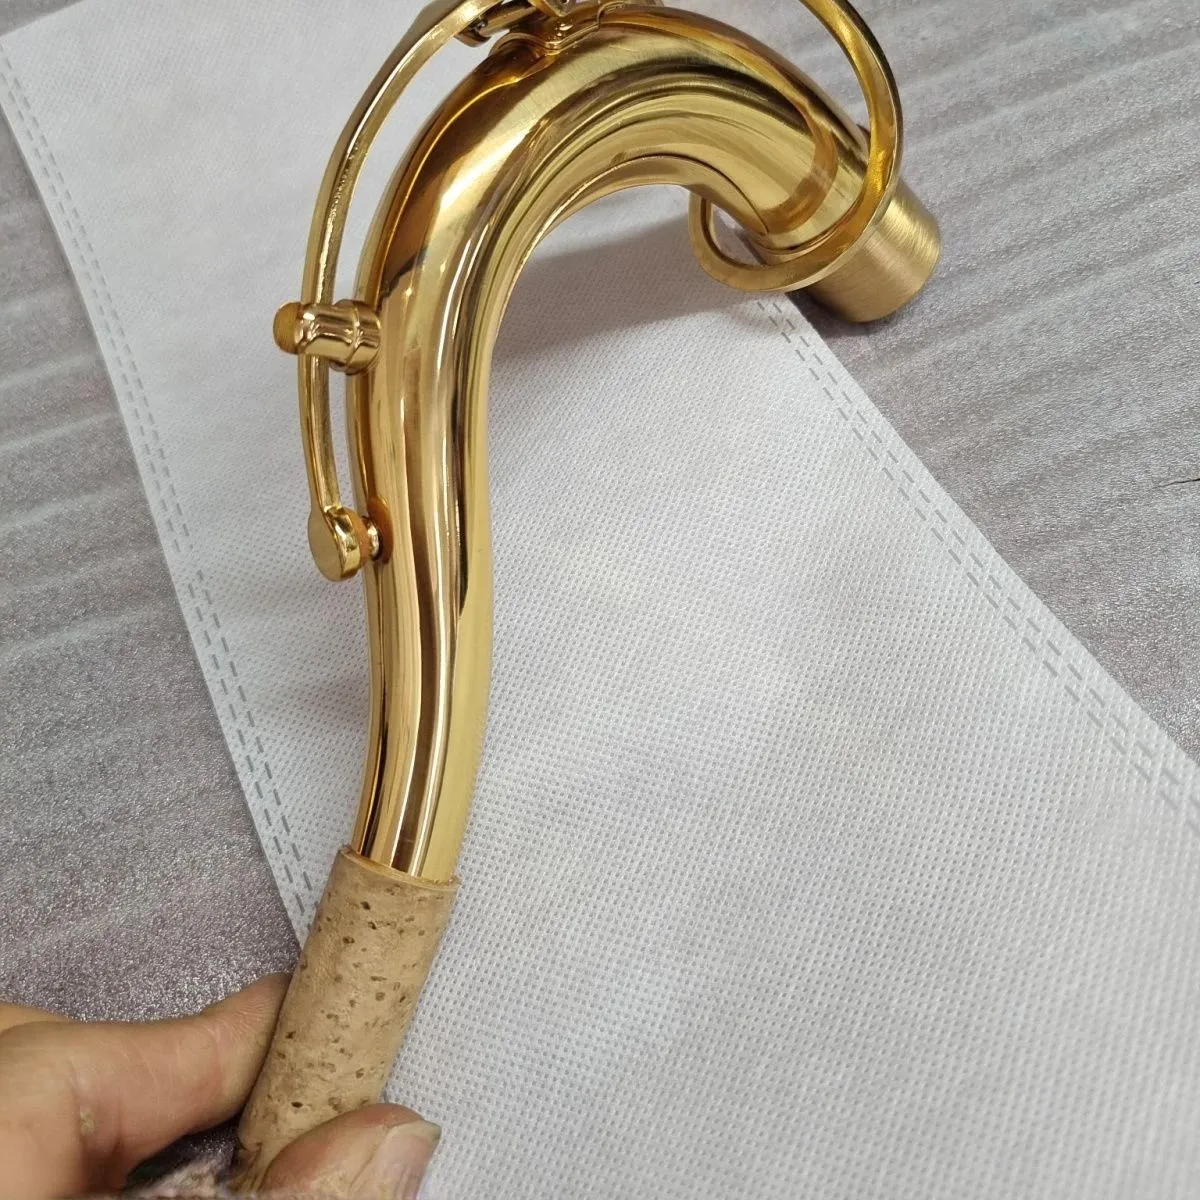 Высококачественный тенор-саксофон B-бемоль с изогнутой шеей, латунный позолоченный гриф, аксессуары для саксофона профессионального уровня